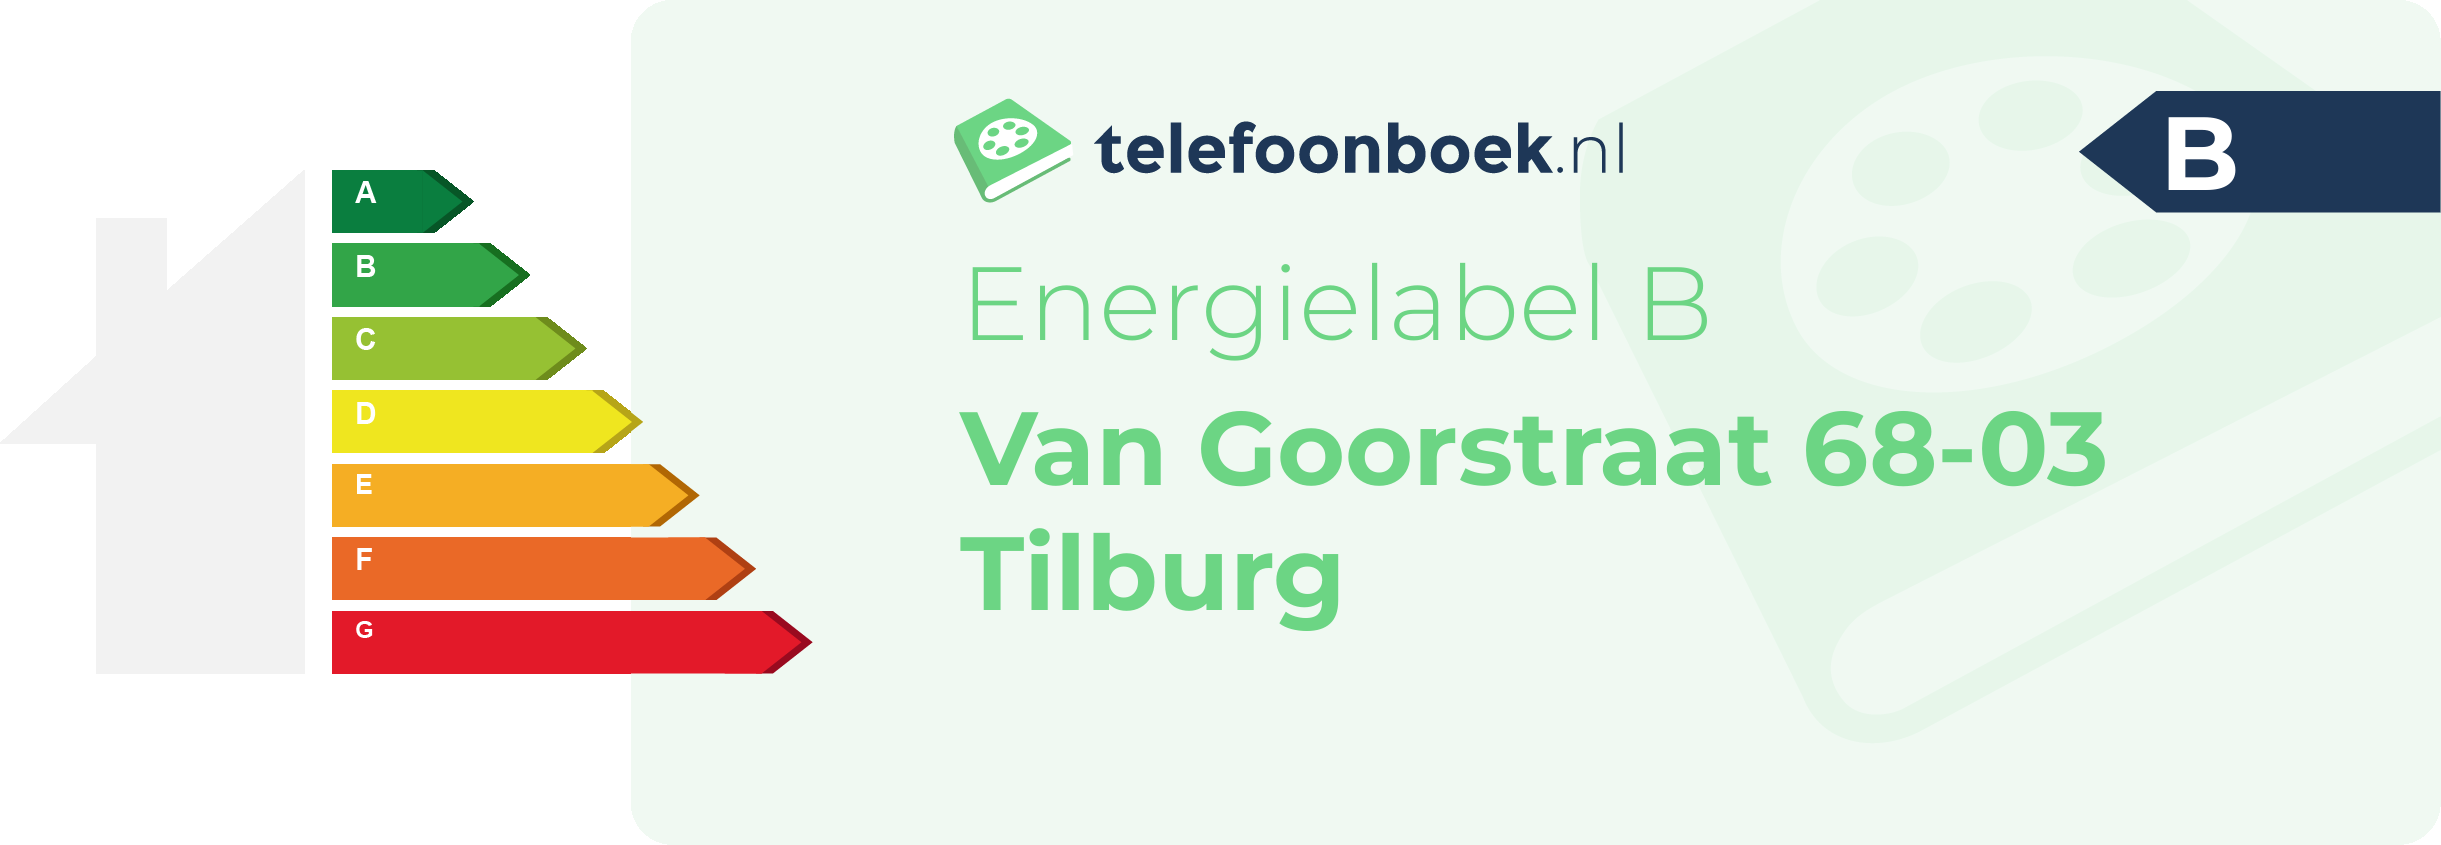 Energielabel Van Goorstraat 68-03 Tilburg